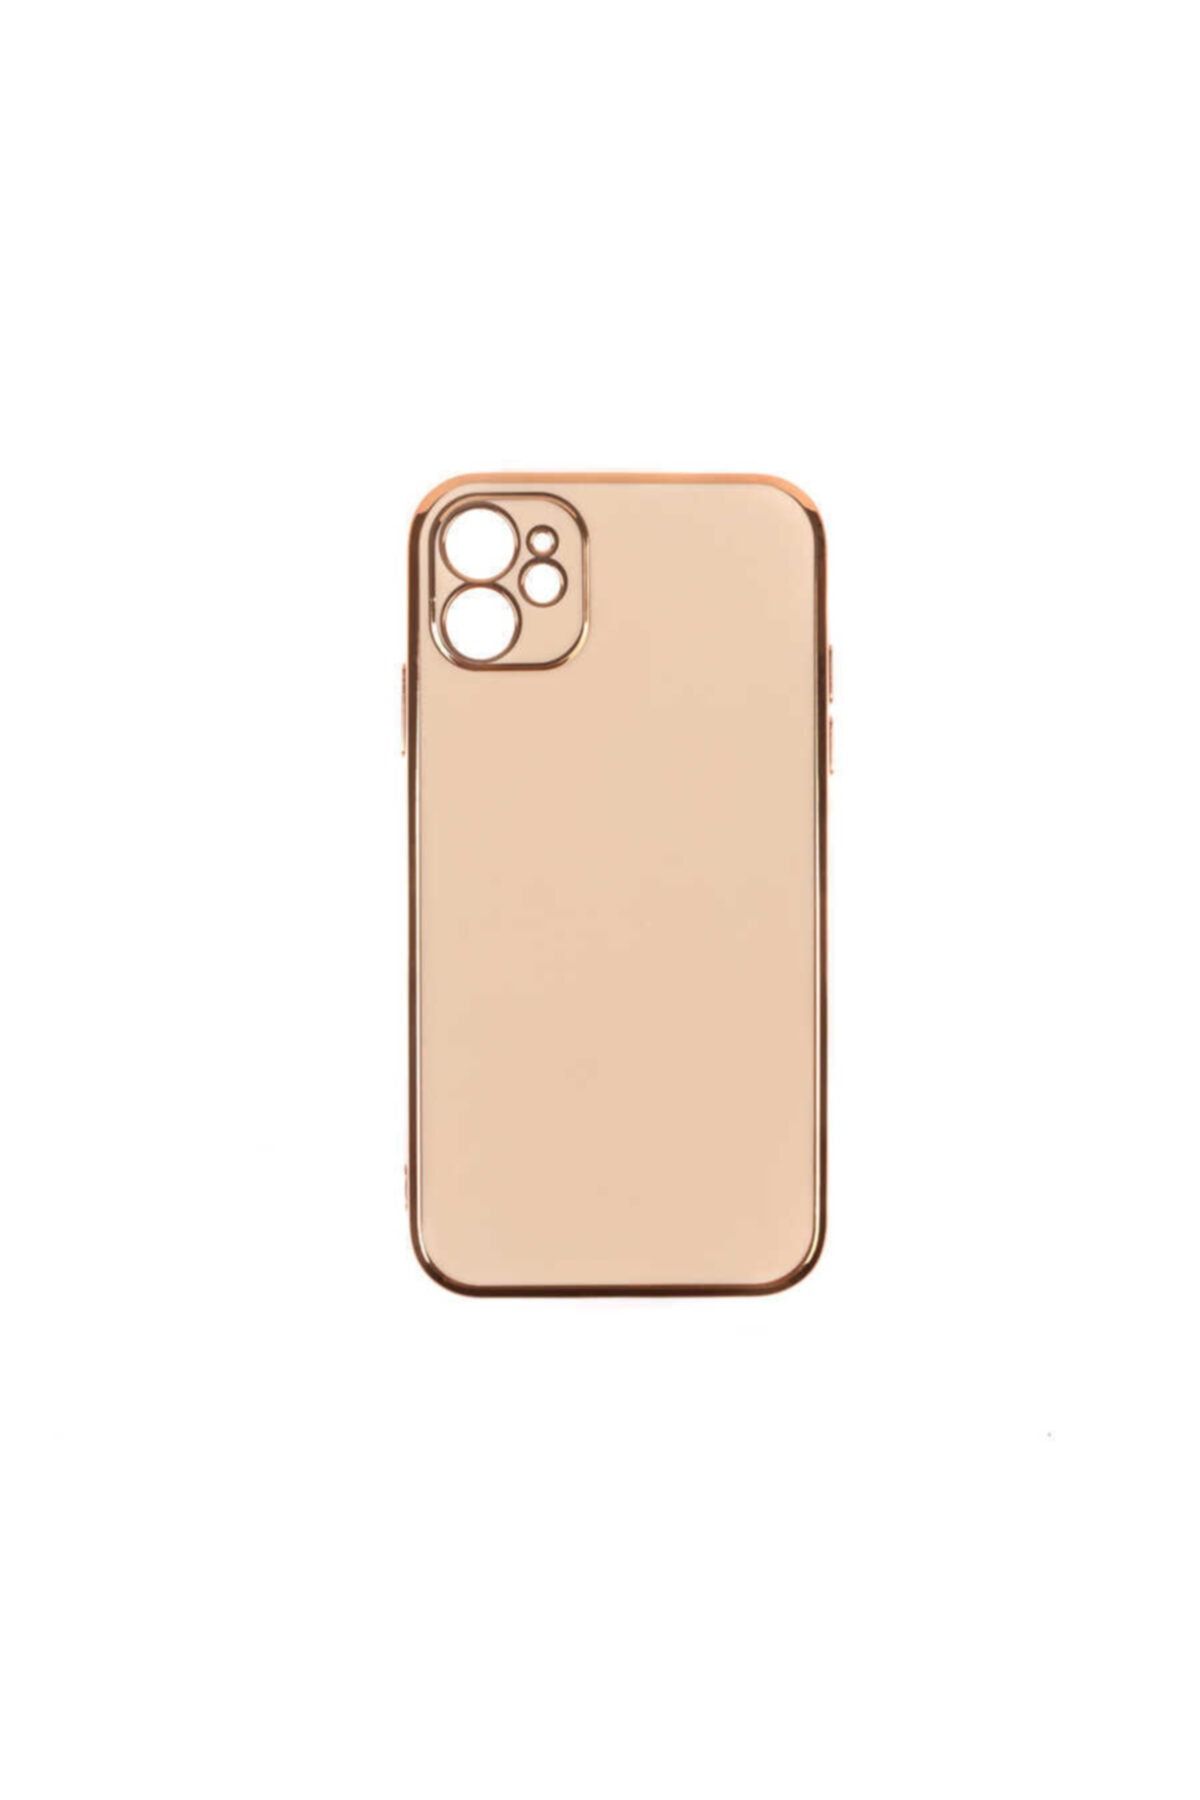 Apple Iphone 11 Uyumlu Nezih Case Altın Rengi Kaplamalı Şık Silikon Kılıf Krem